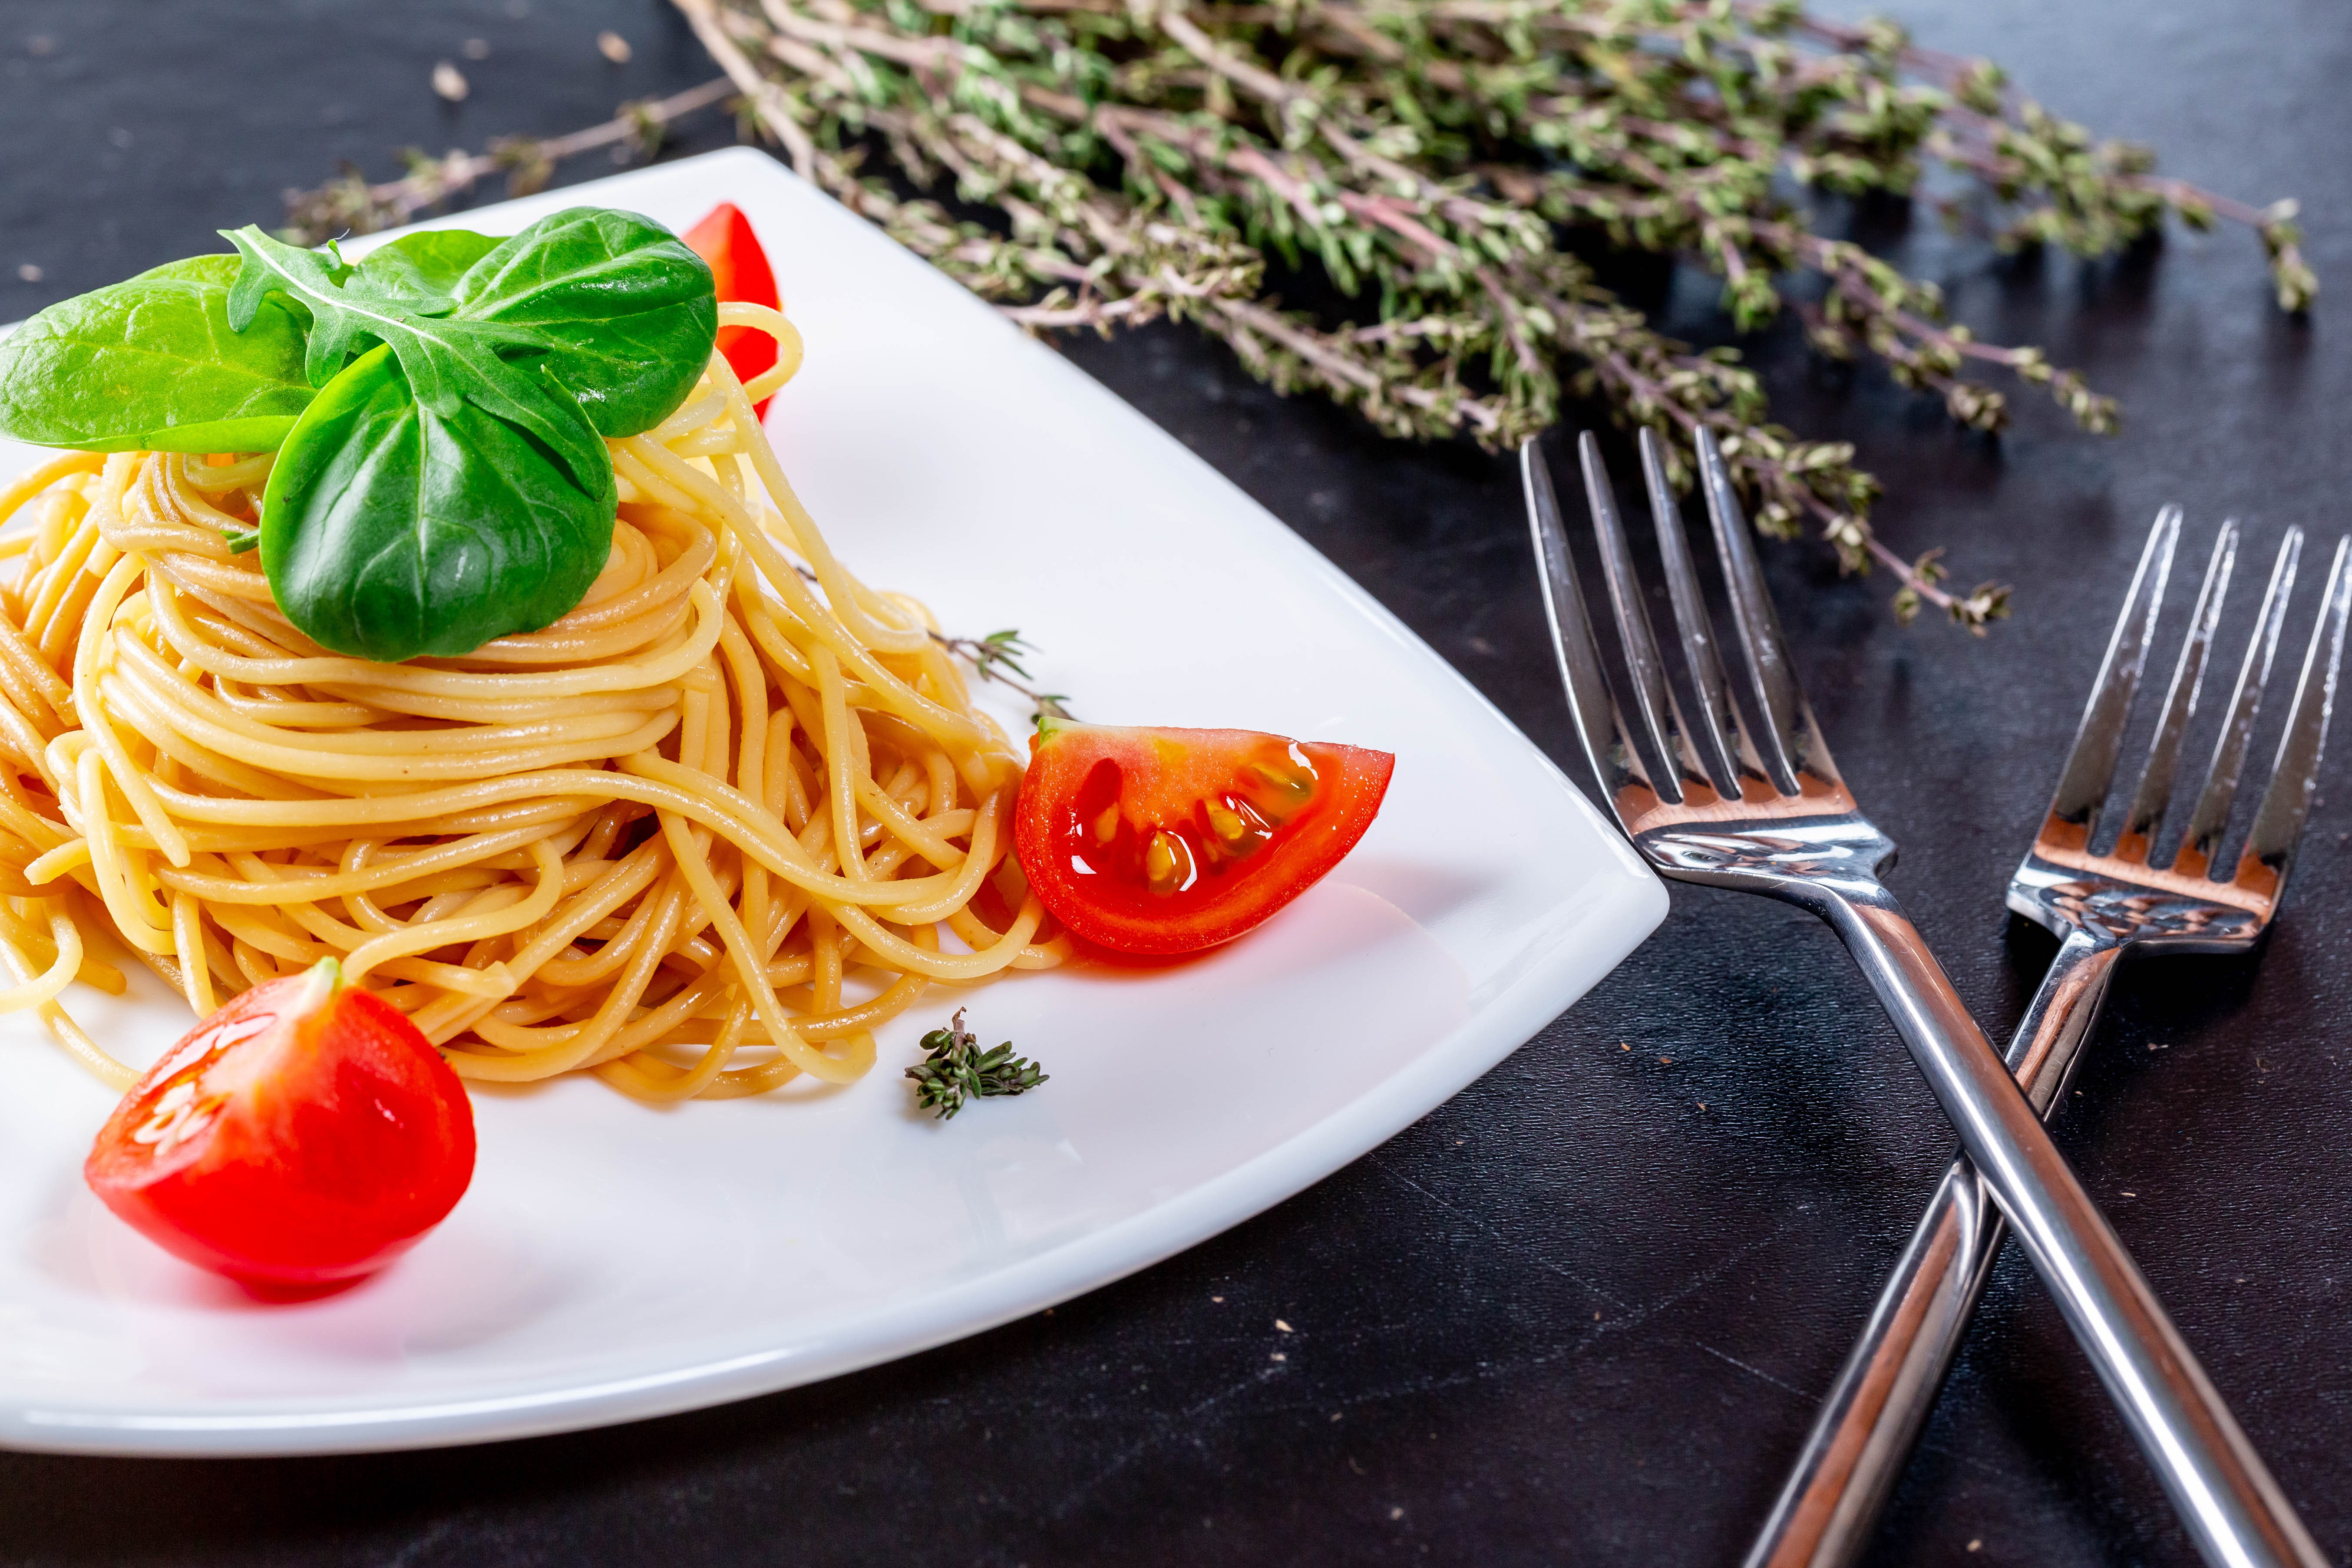 Descarga gratuita de fondo de pantalla para móvil de Comida, Tomate, Pasta, Alimento, Bodegón.